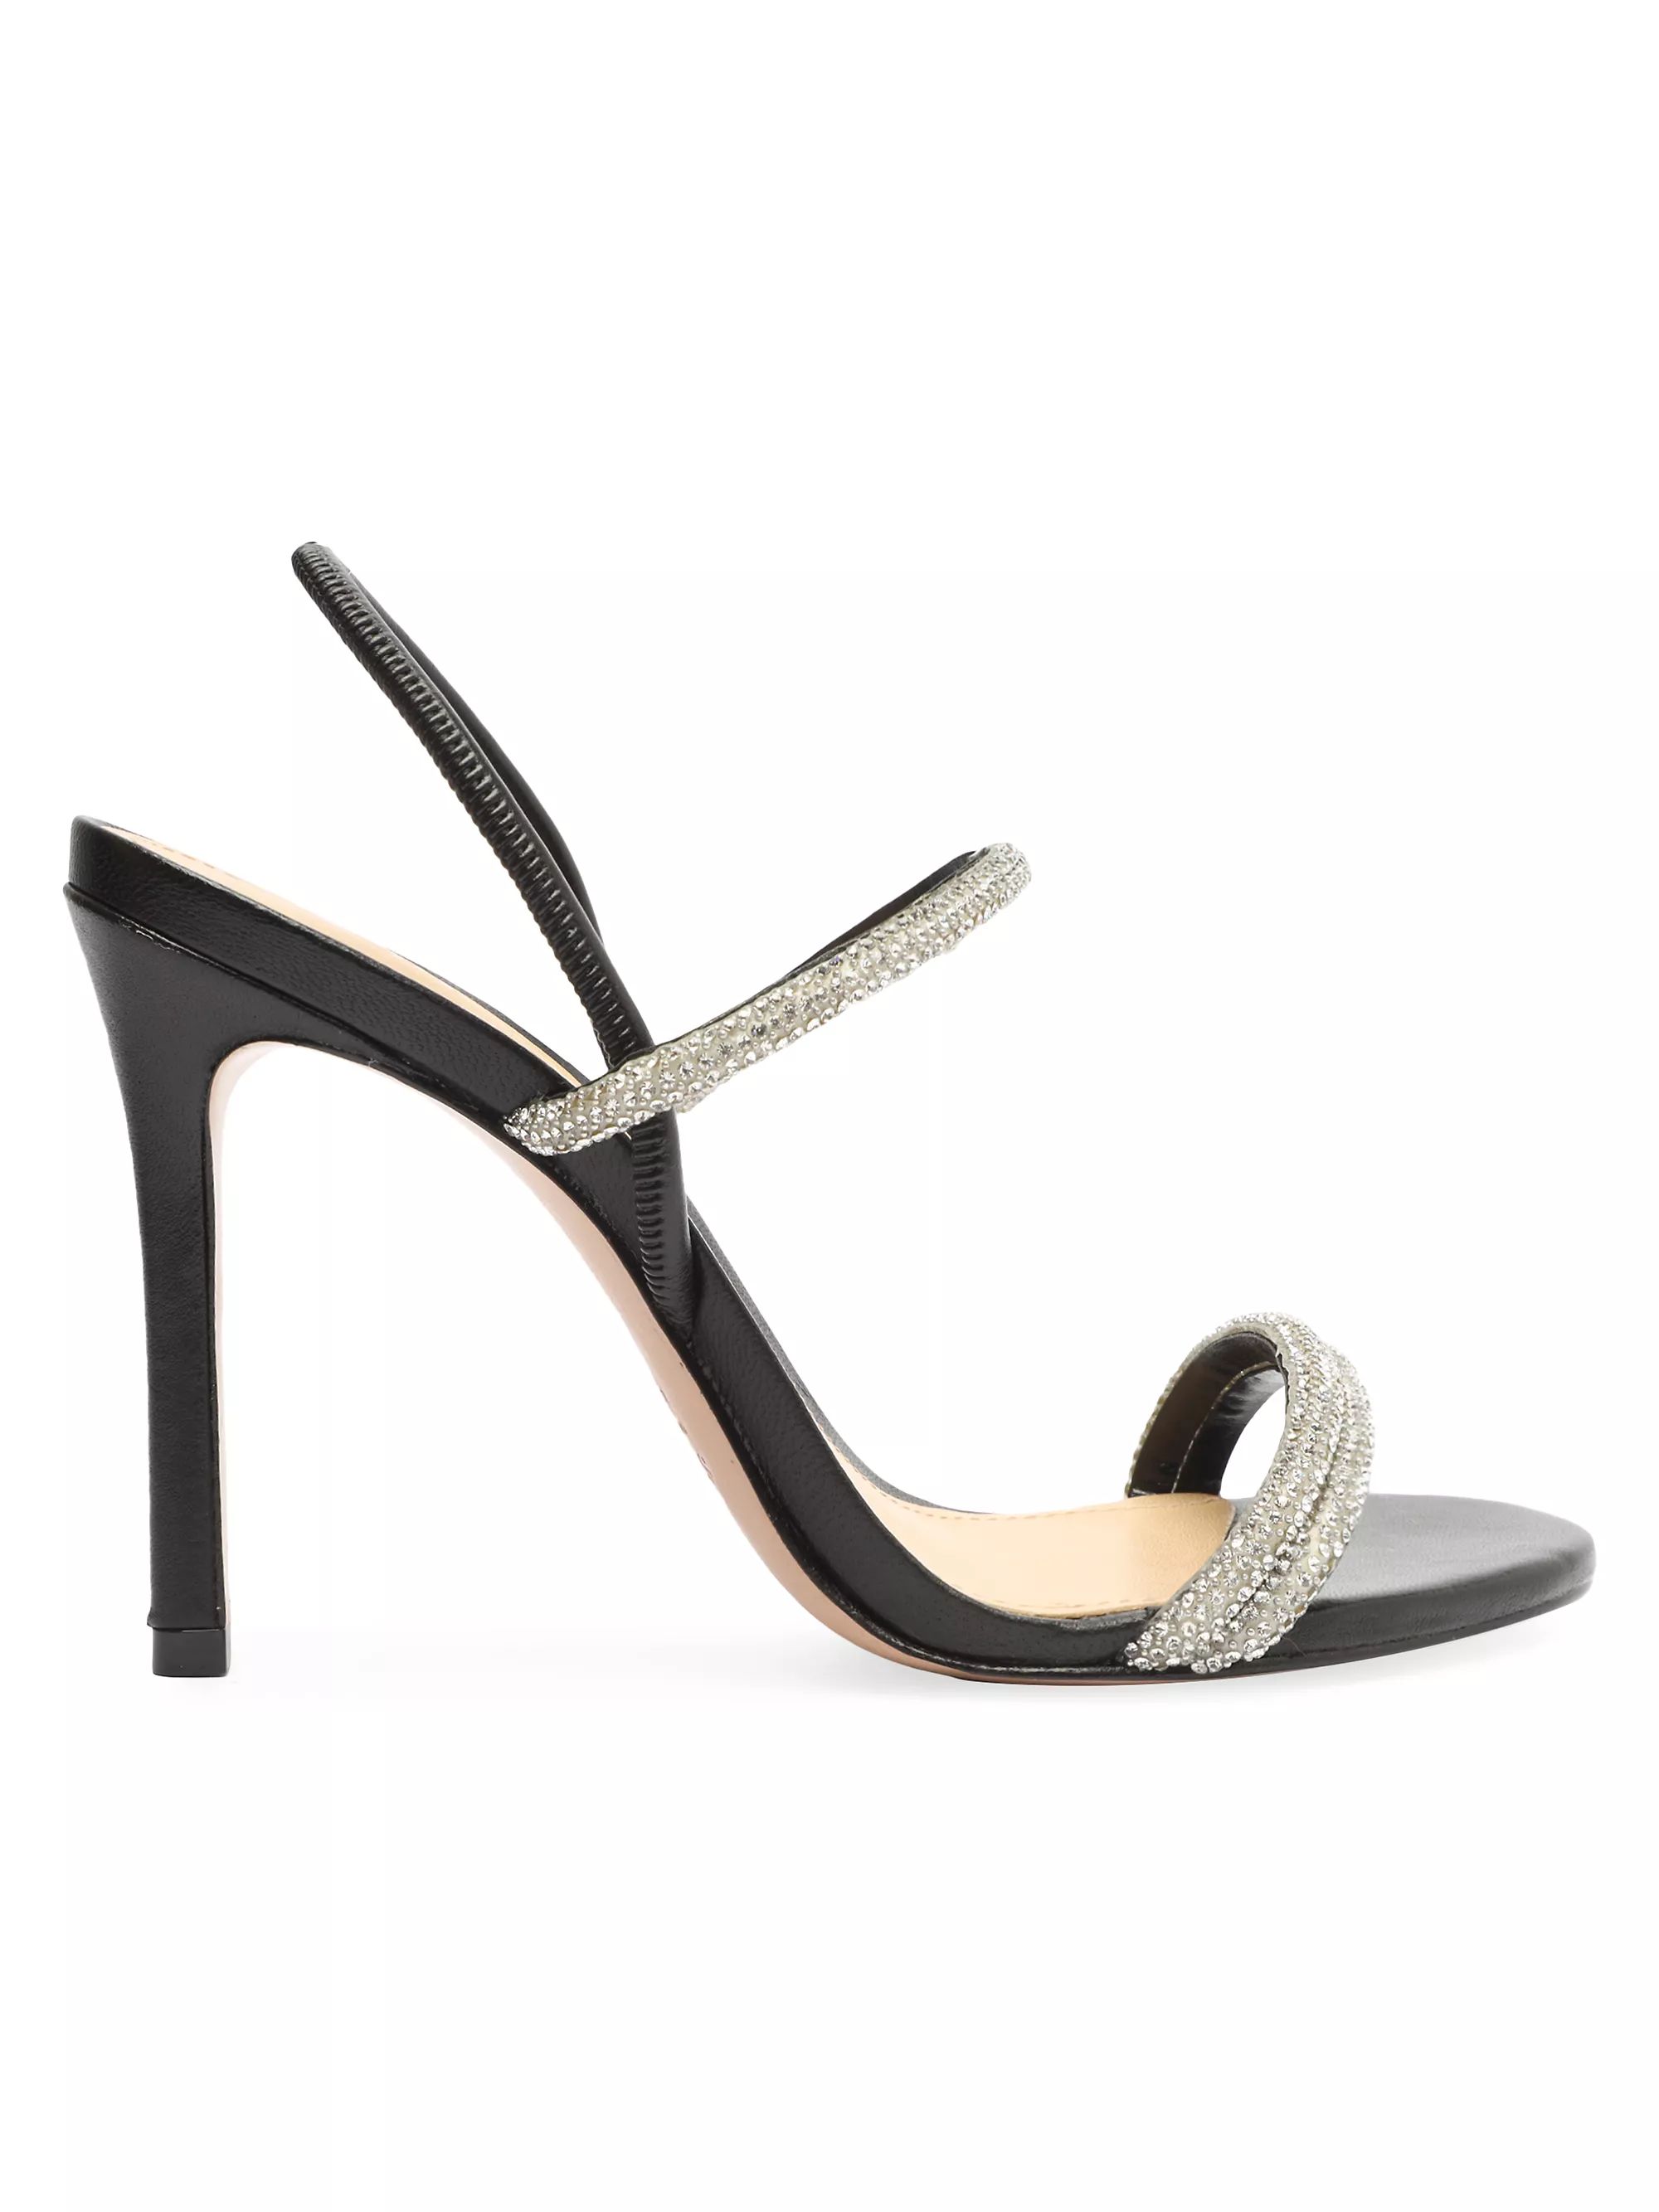 Whiteley Stiletto Sandals | Saks Fifth Avenue